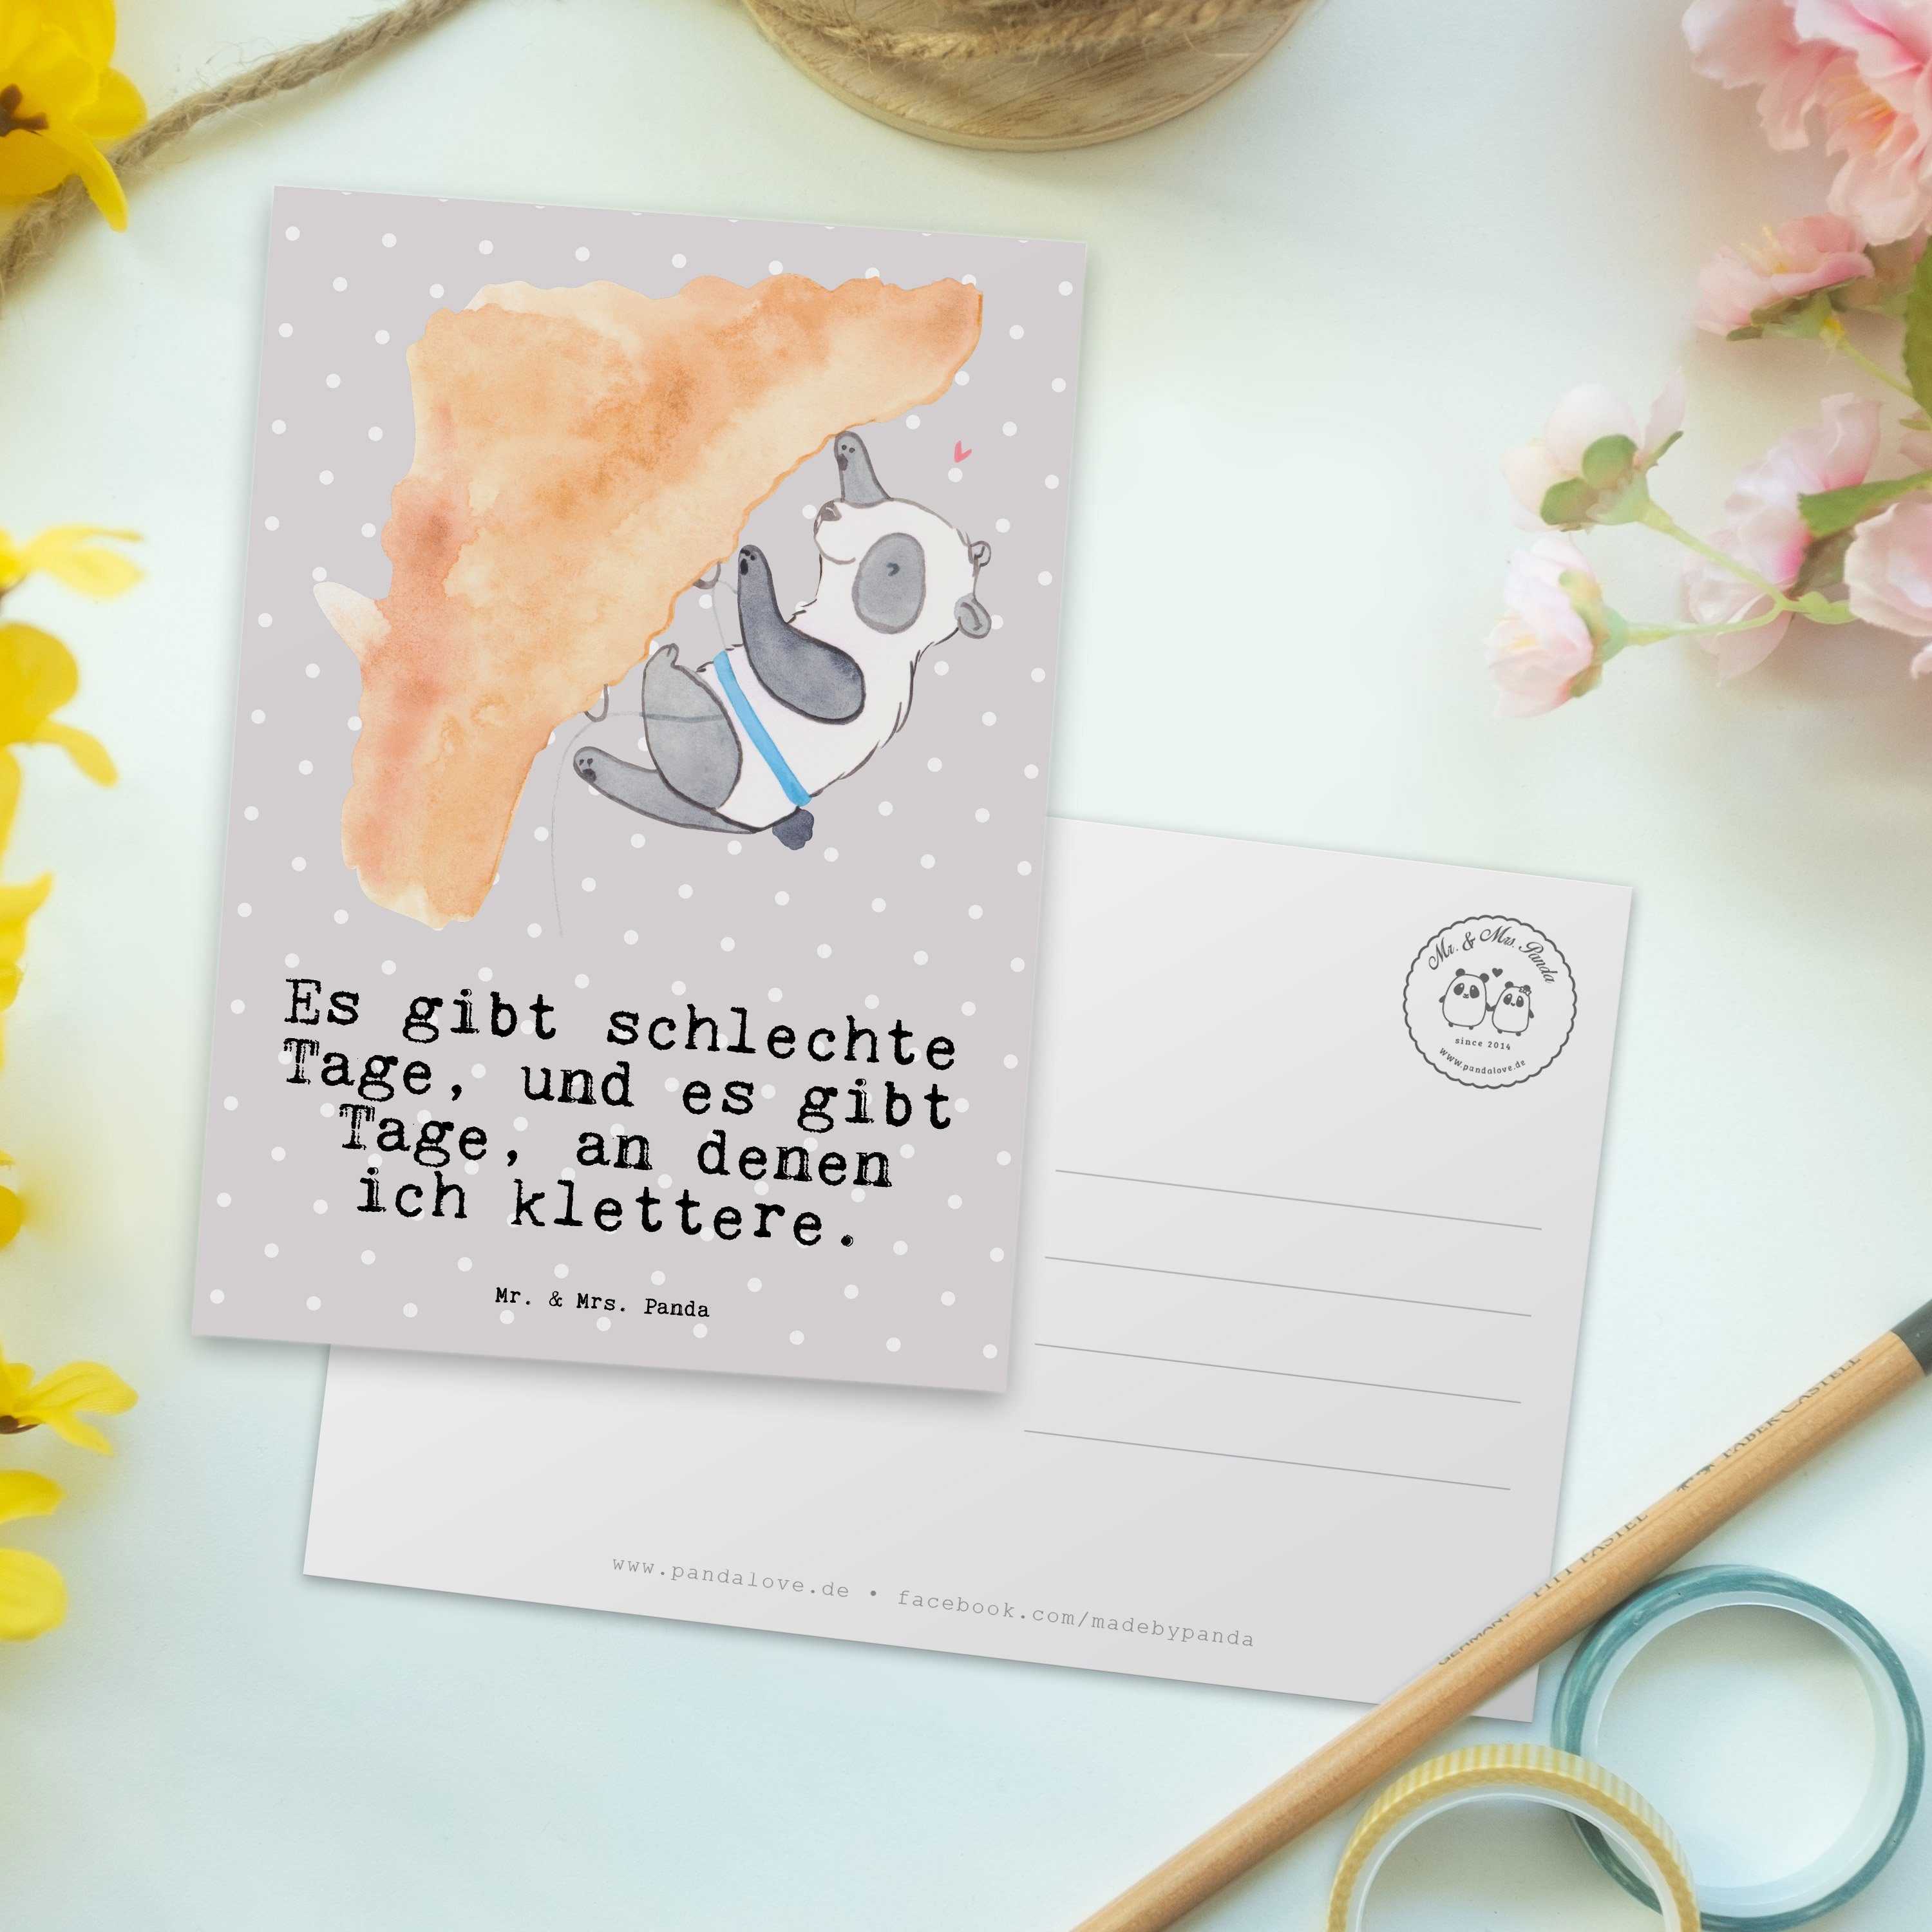 - Karte, Panda Schenken, Klettern - Mrs. Panda Geschenk, & Tage Mr. Postkarte Grau Pastell Grußk